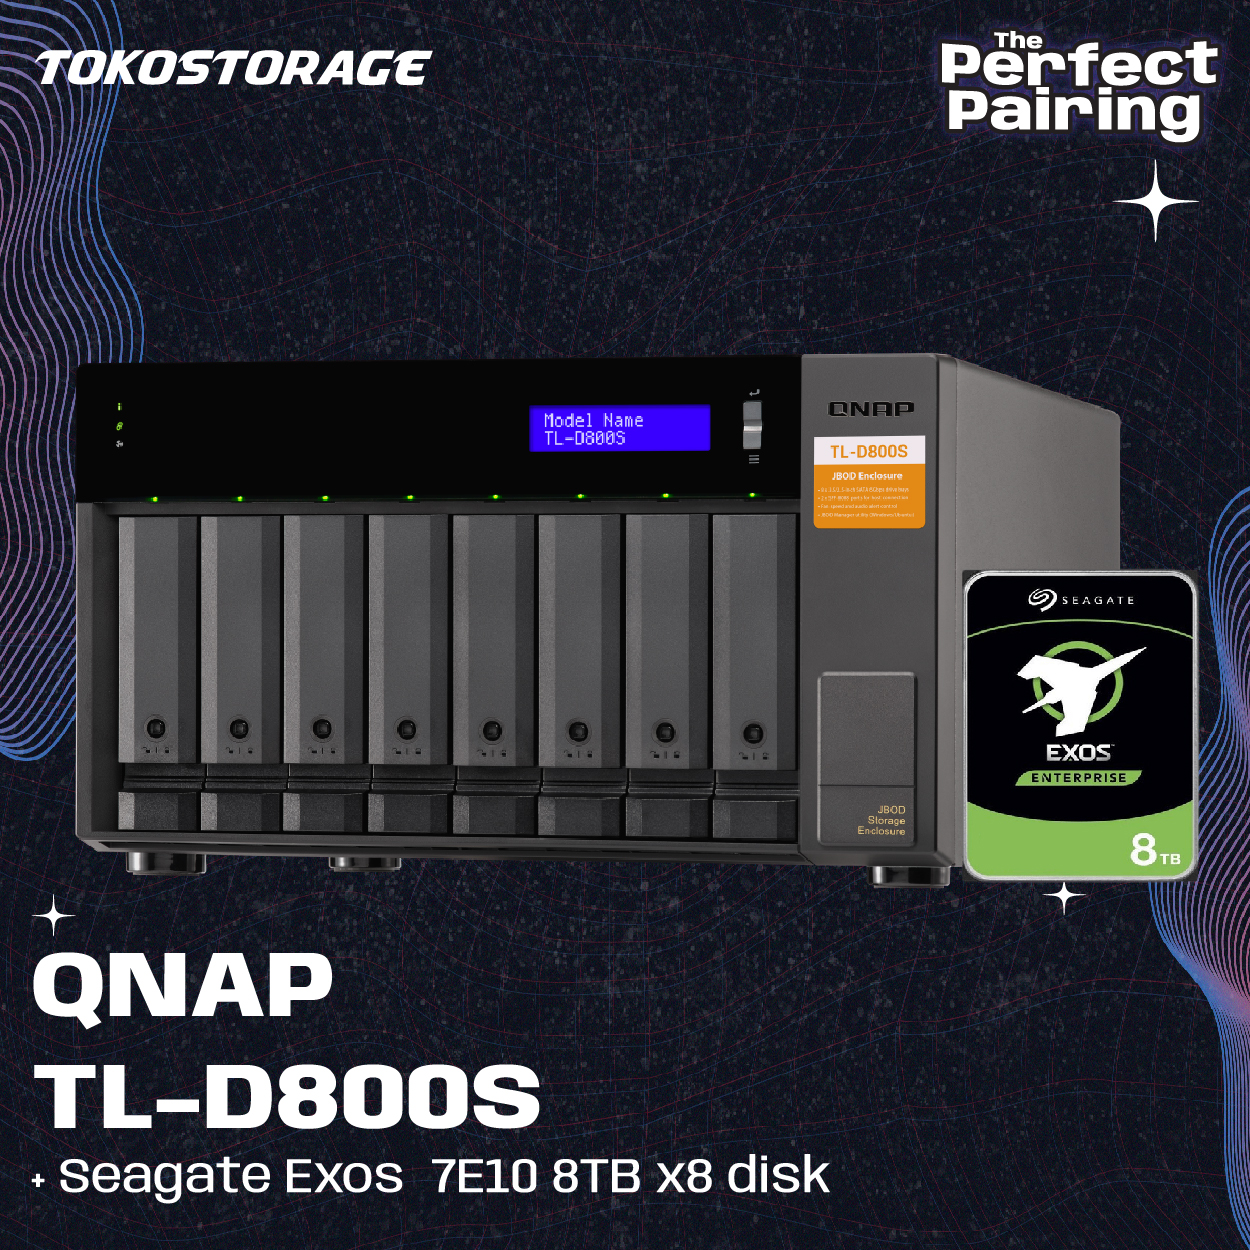 QNAP TL-D800S dan HDD Seagate EXOS 8TB - 8 x 8TB